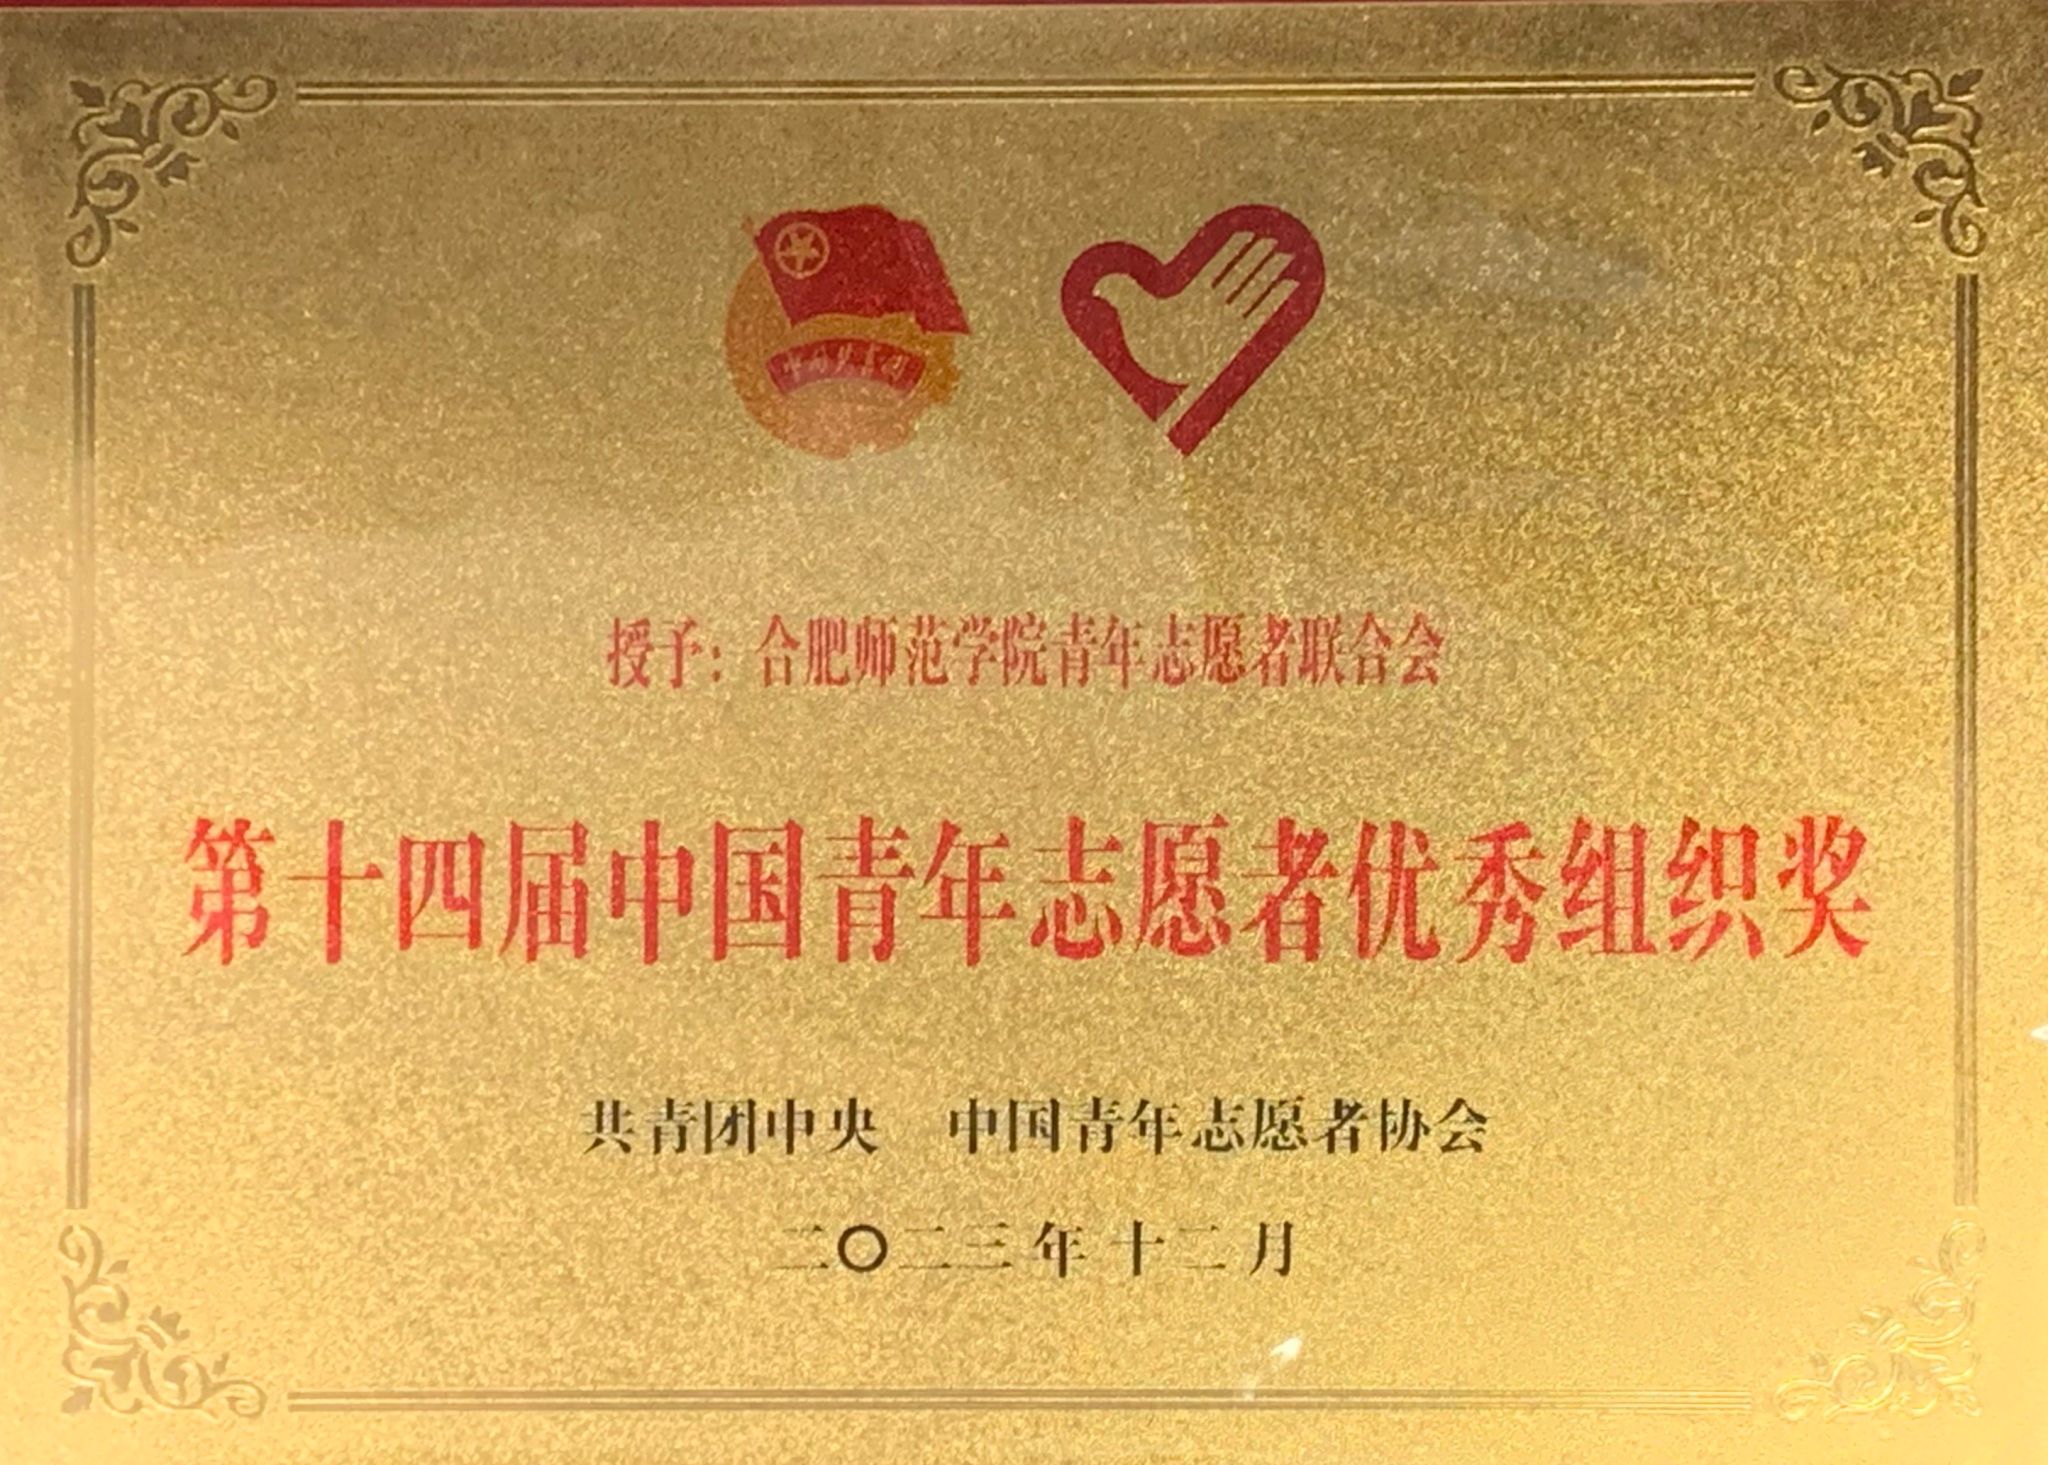 学院首获中国青年志愿者优秀组织奖